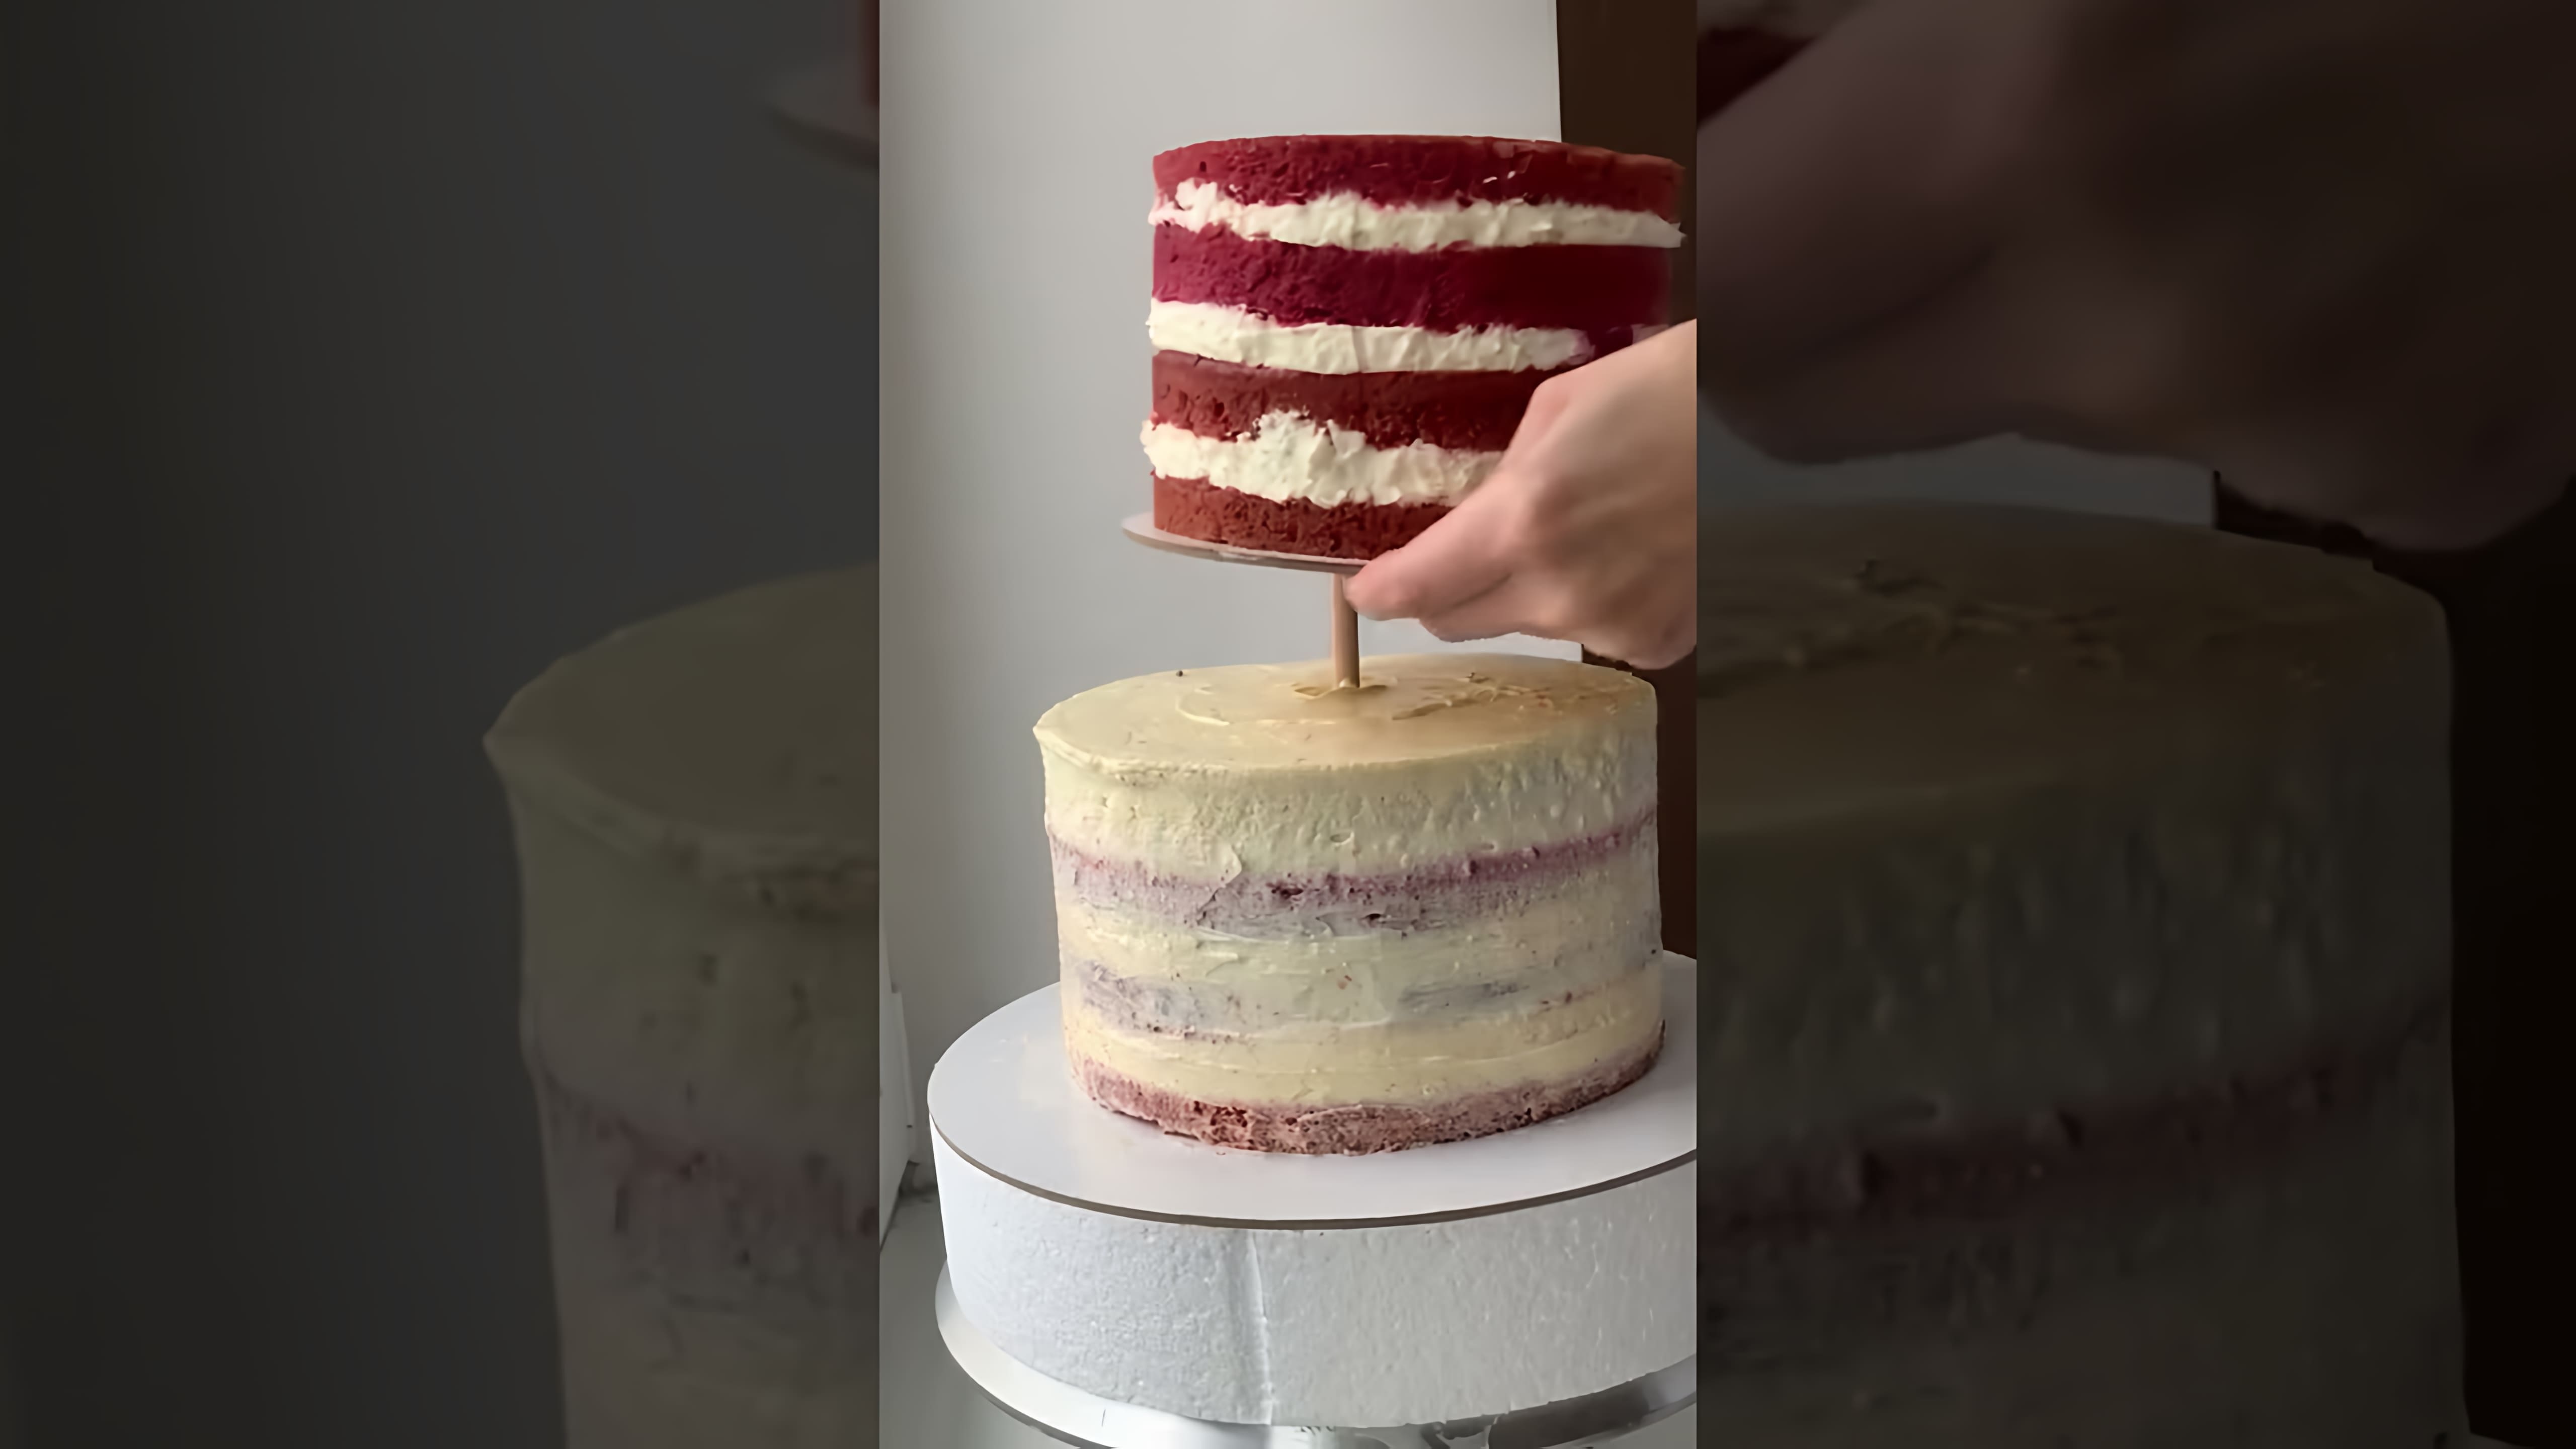 В этом видео кондитер показывает процесс создания двухъярусного свадебного торта